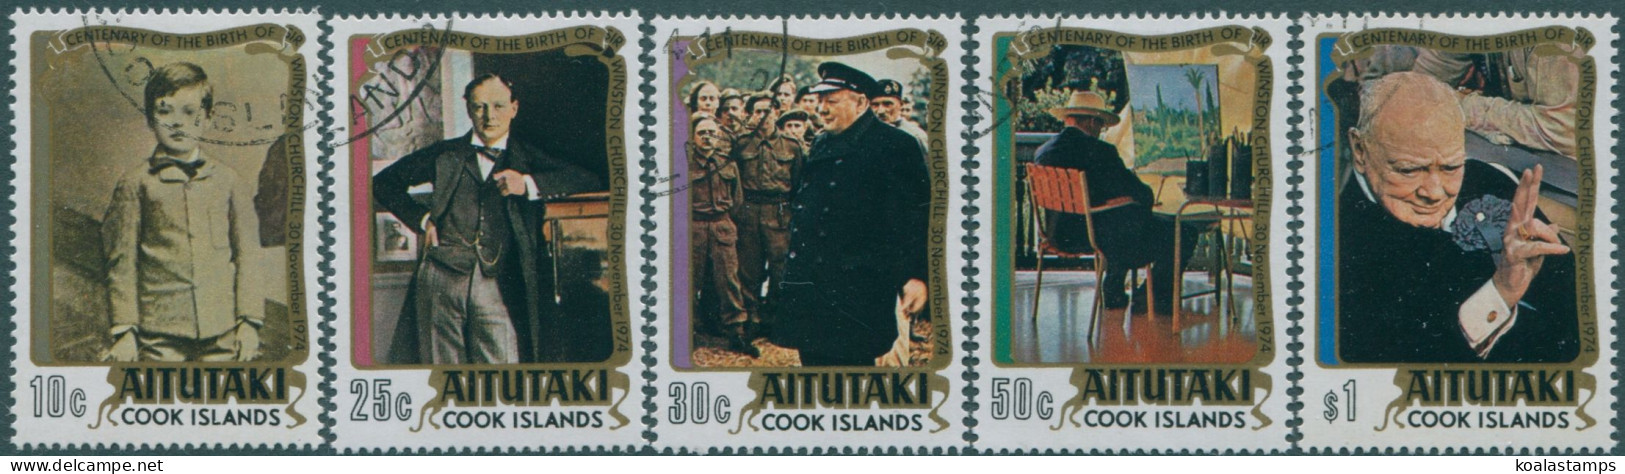 Aitutaki 1974 SG136-140 Winston Churchill Set FU - Cookinseln